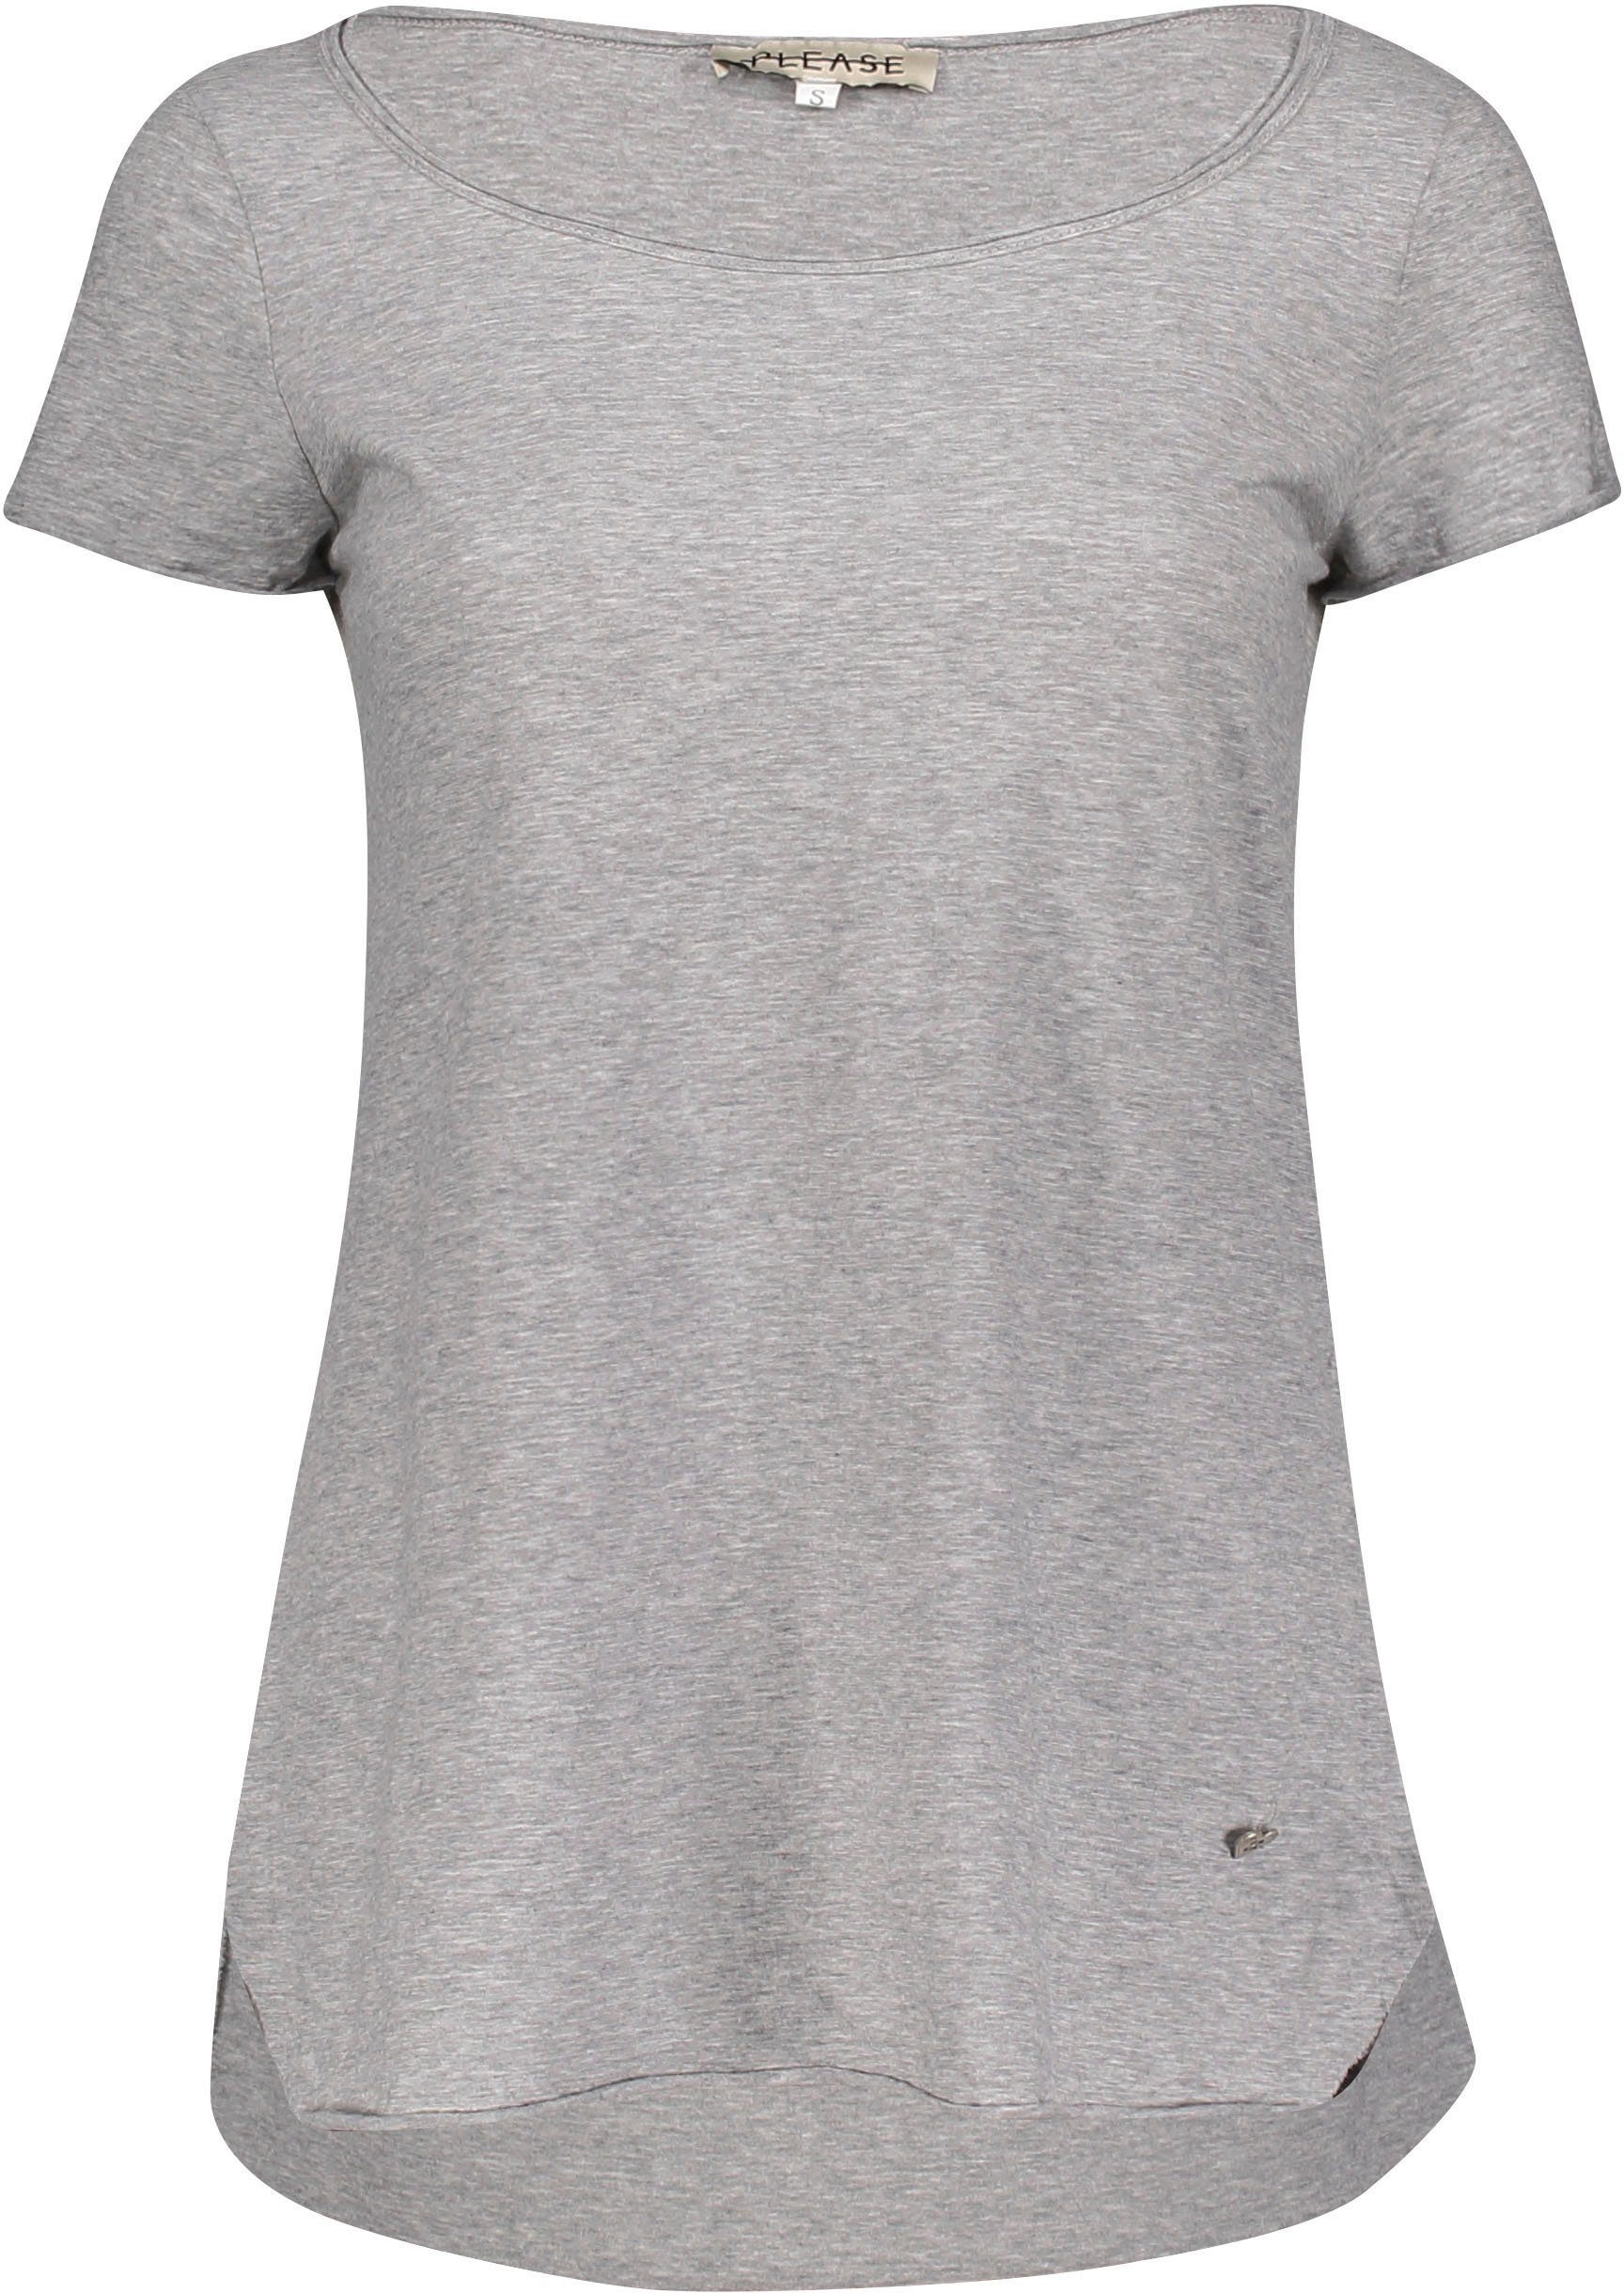 1907 Jeans T-Shirt Saumabschlüssen grigio angeschnittenen meliert) und Please Please melange (grau mit leicht M00A Metal-Label